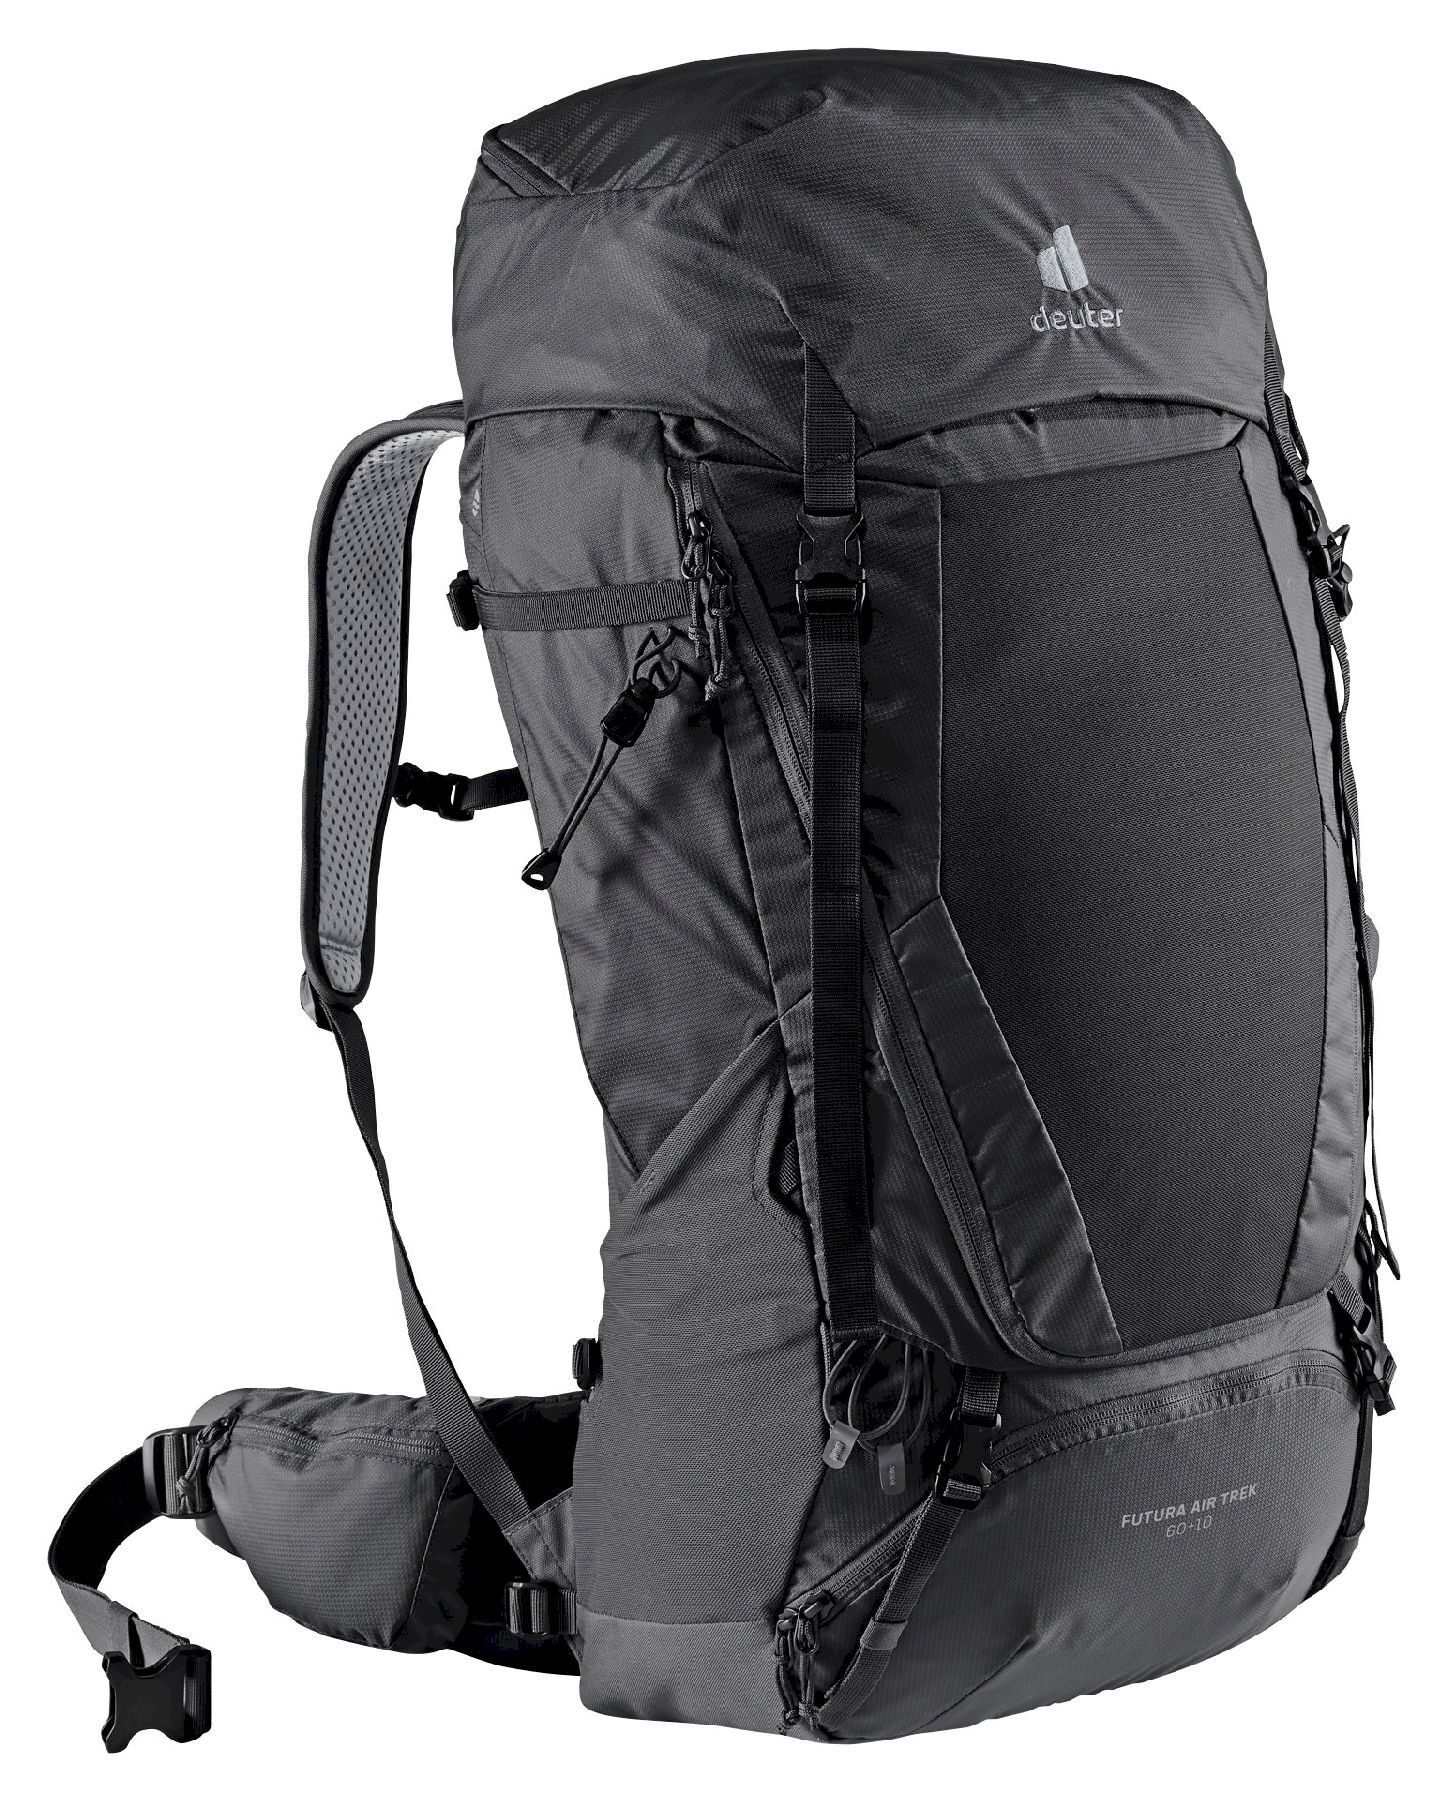 Deuter Futura Air Trek 60 + 10 - Hiking backpack - Men's